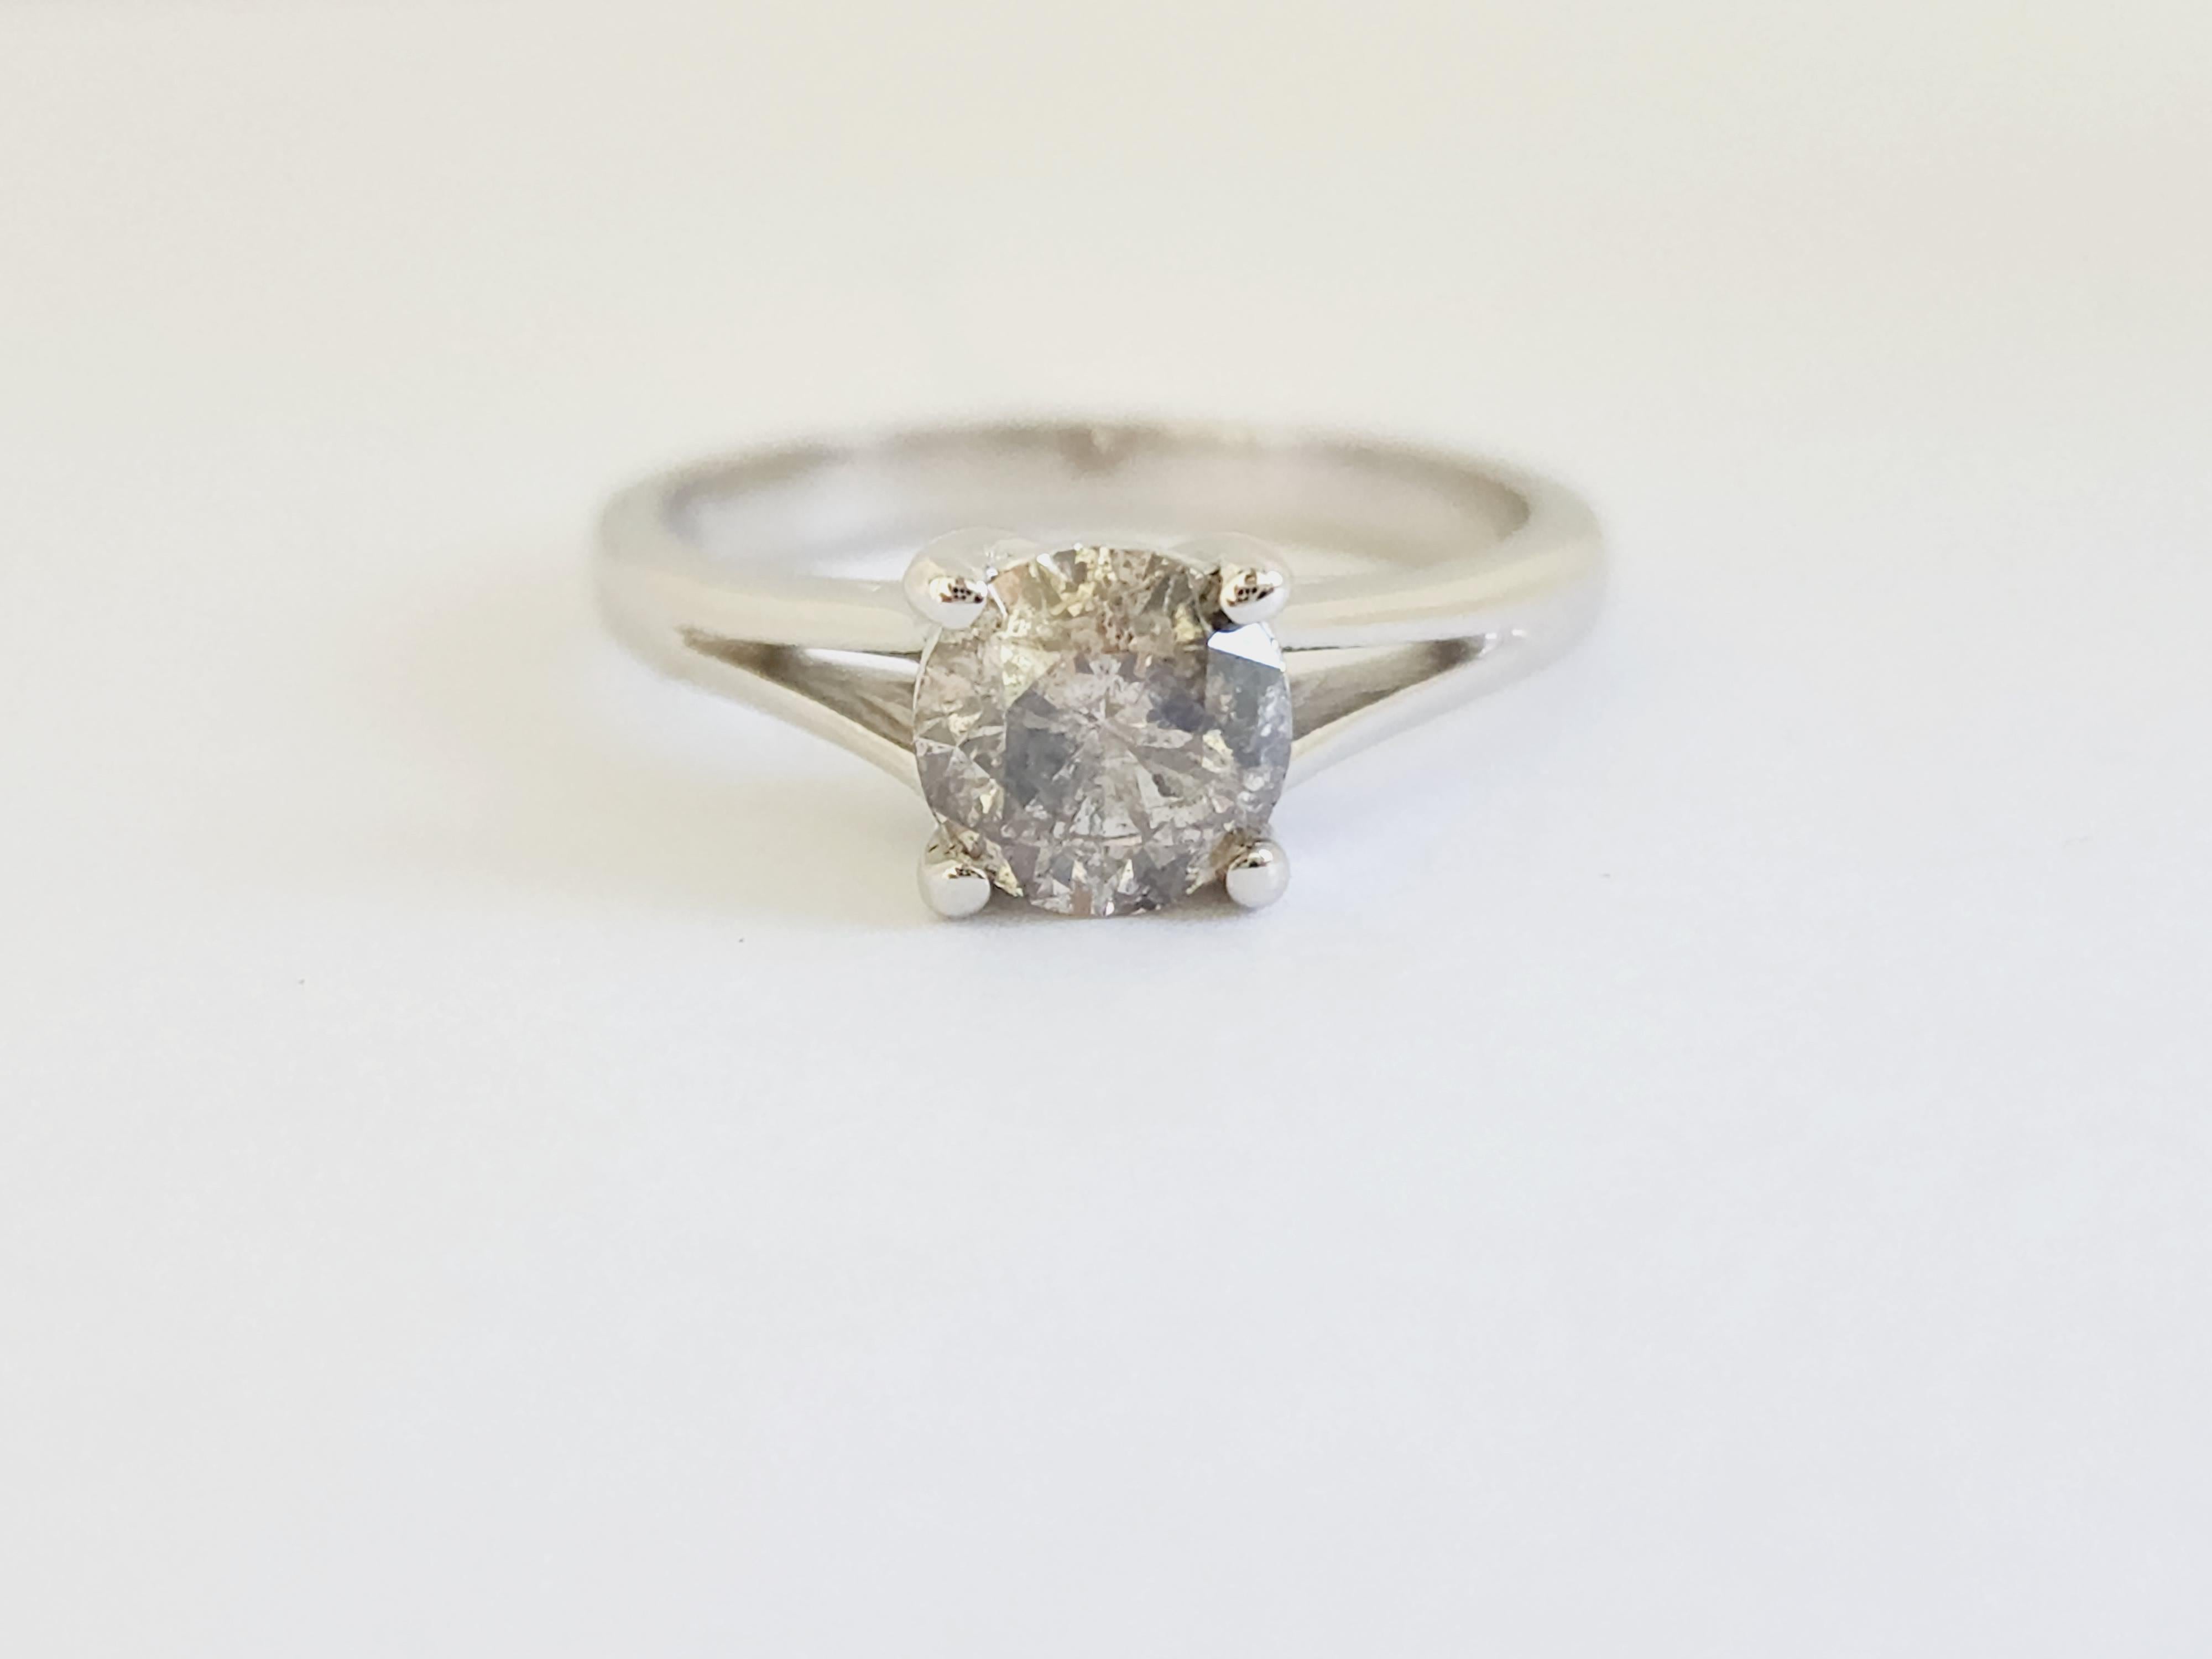 Natural IGI 1.01 Carat Grayish Brown Round Diamond Ring 14 Karat White Gold. Set on 4-prong 14K white gold ring.
Ring size: 6.5